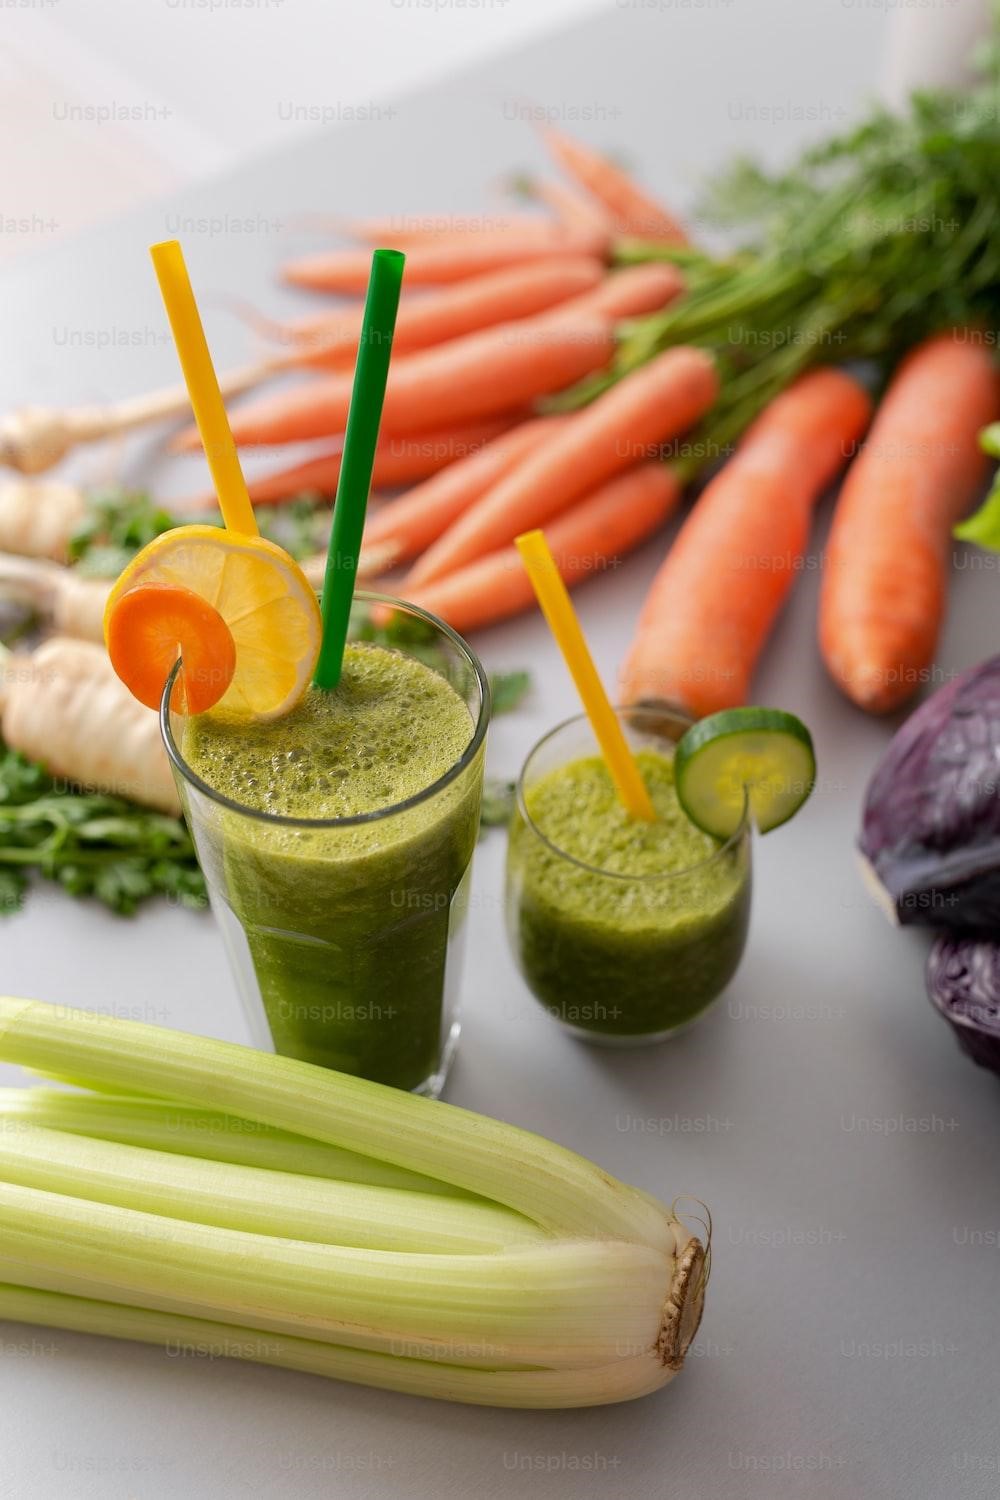 Celery Juice: A Green Elixir for Skin Health?